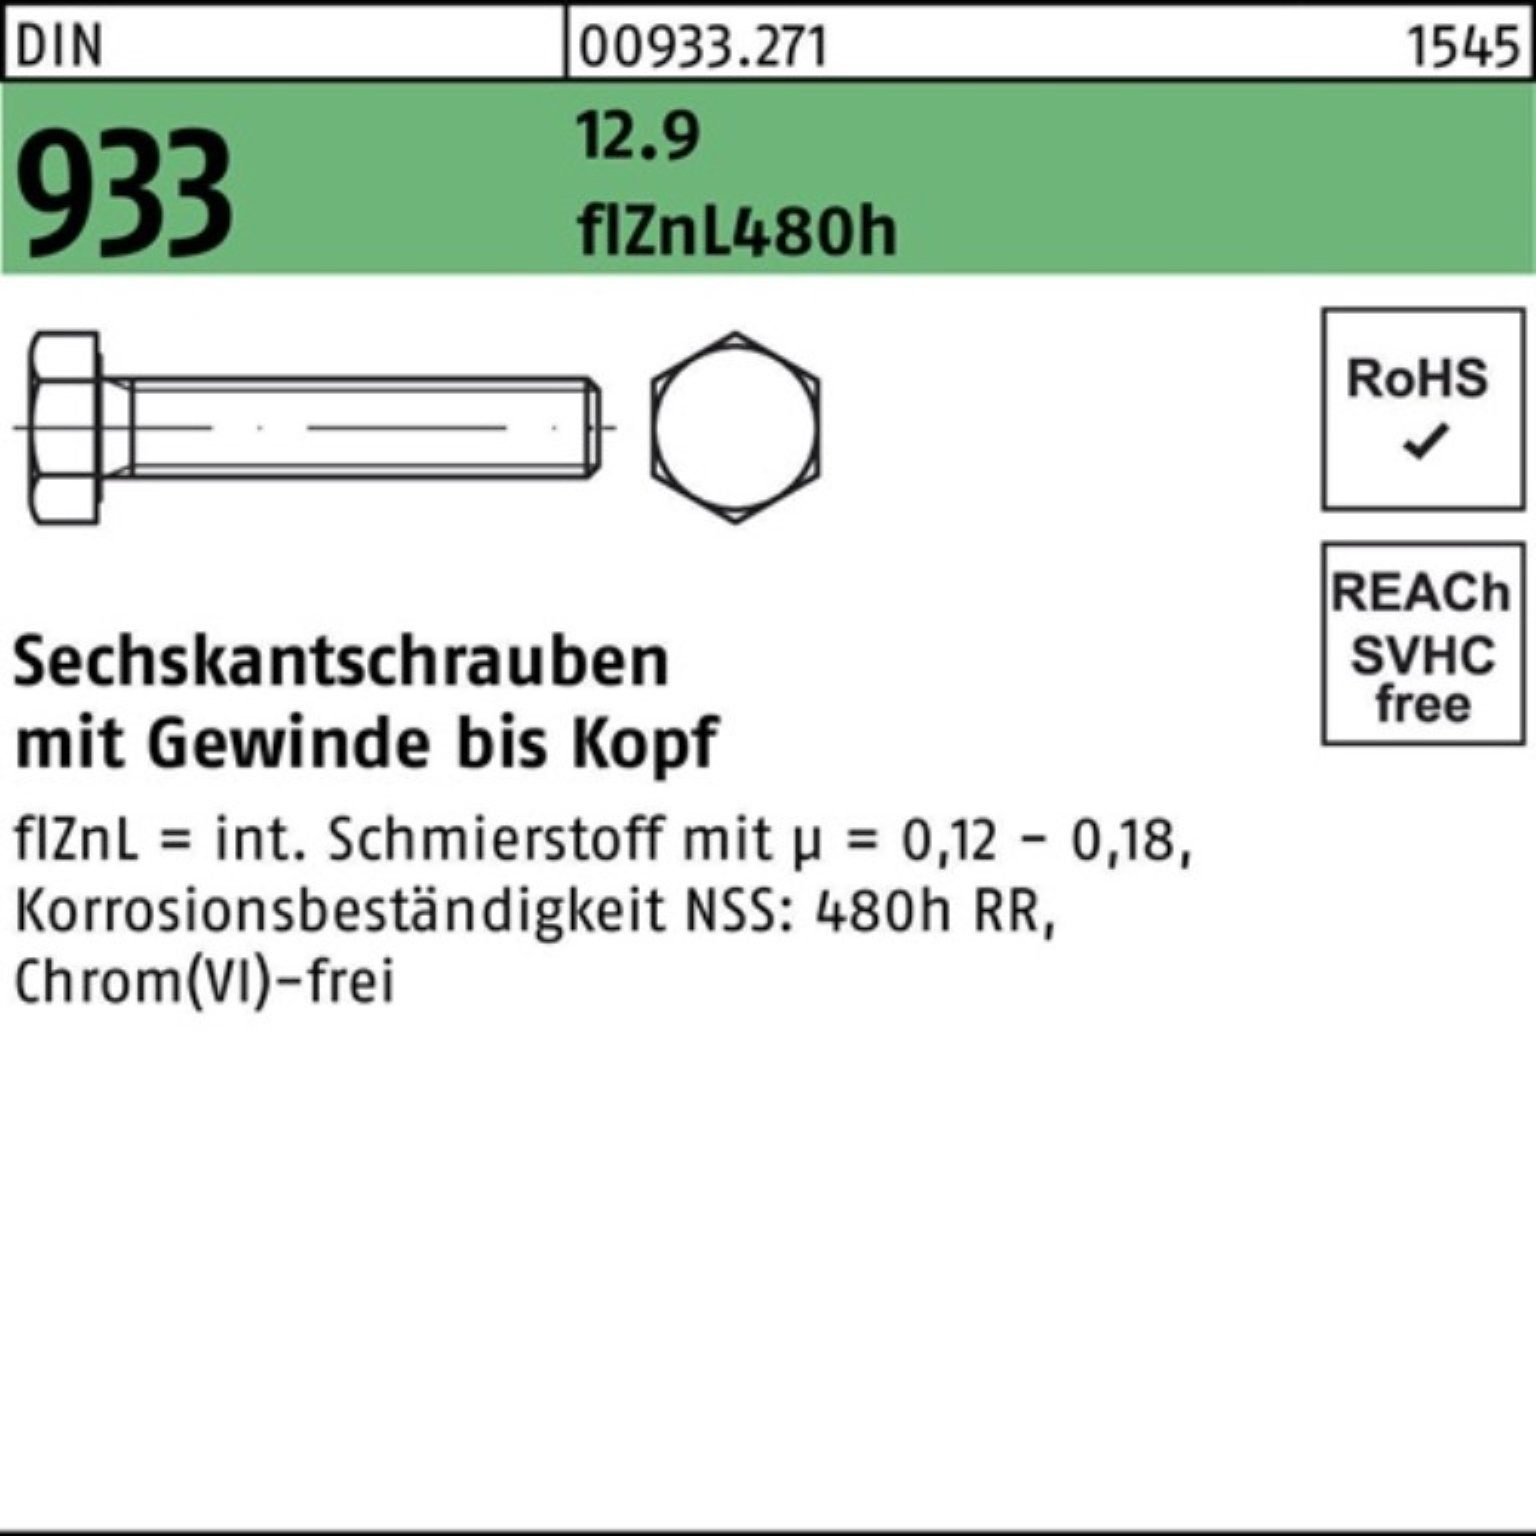 Reyher Sechskantschraube 500er Pack Sechskantschraube DIN 933 VG M6x 20 12.9 flZnL 480h zinklam